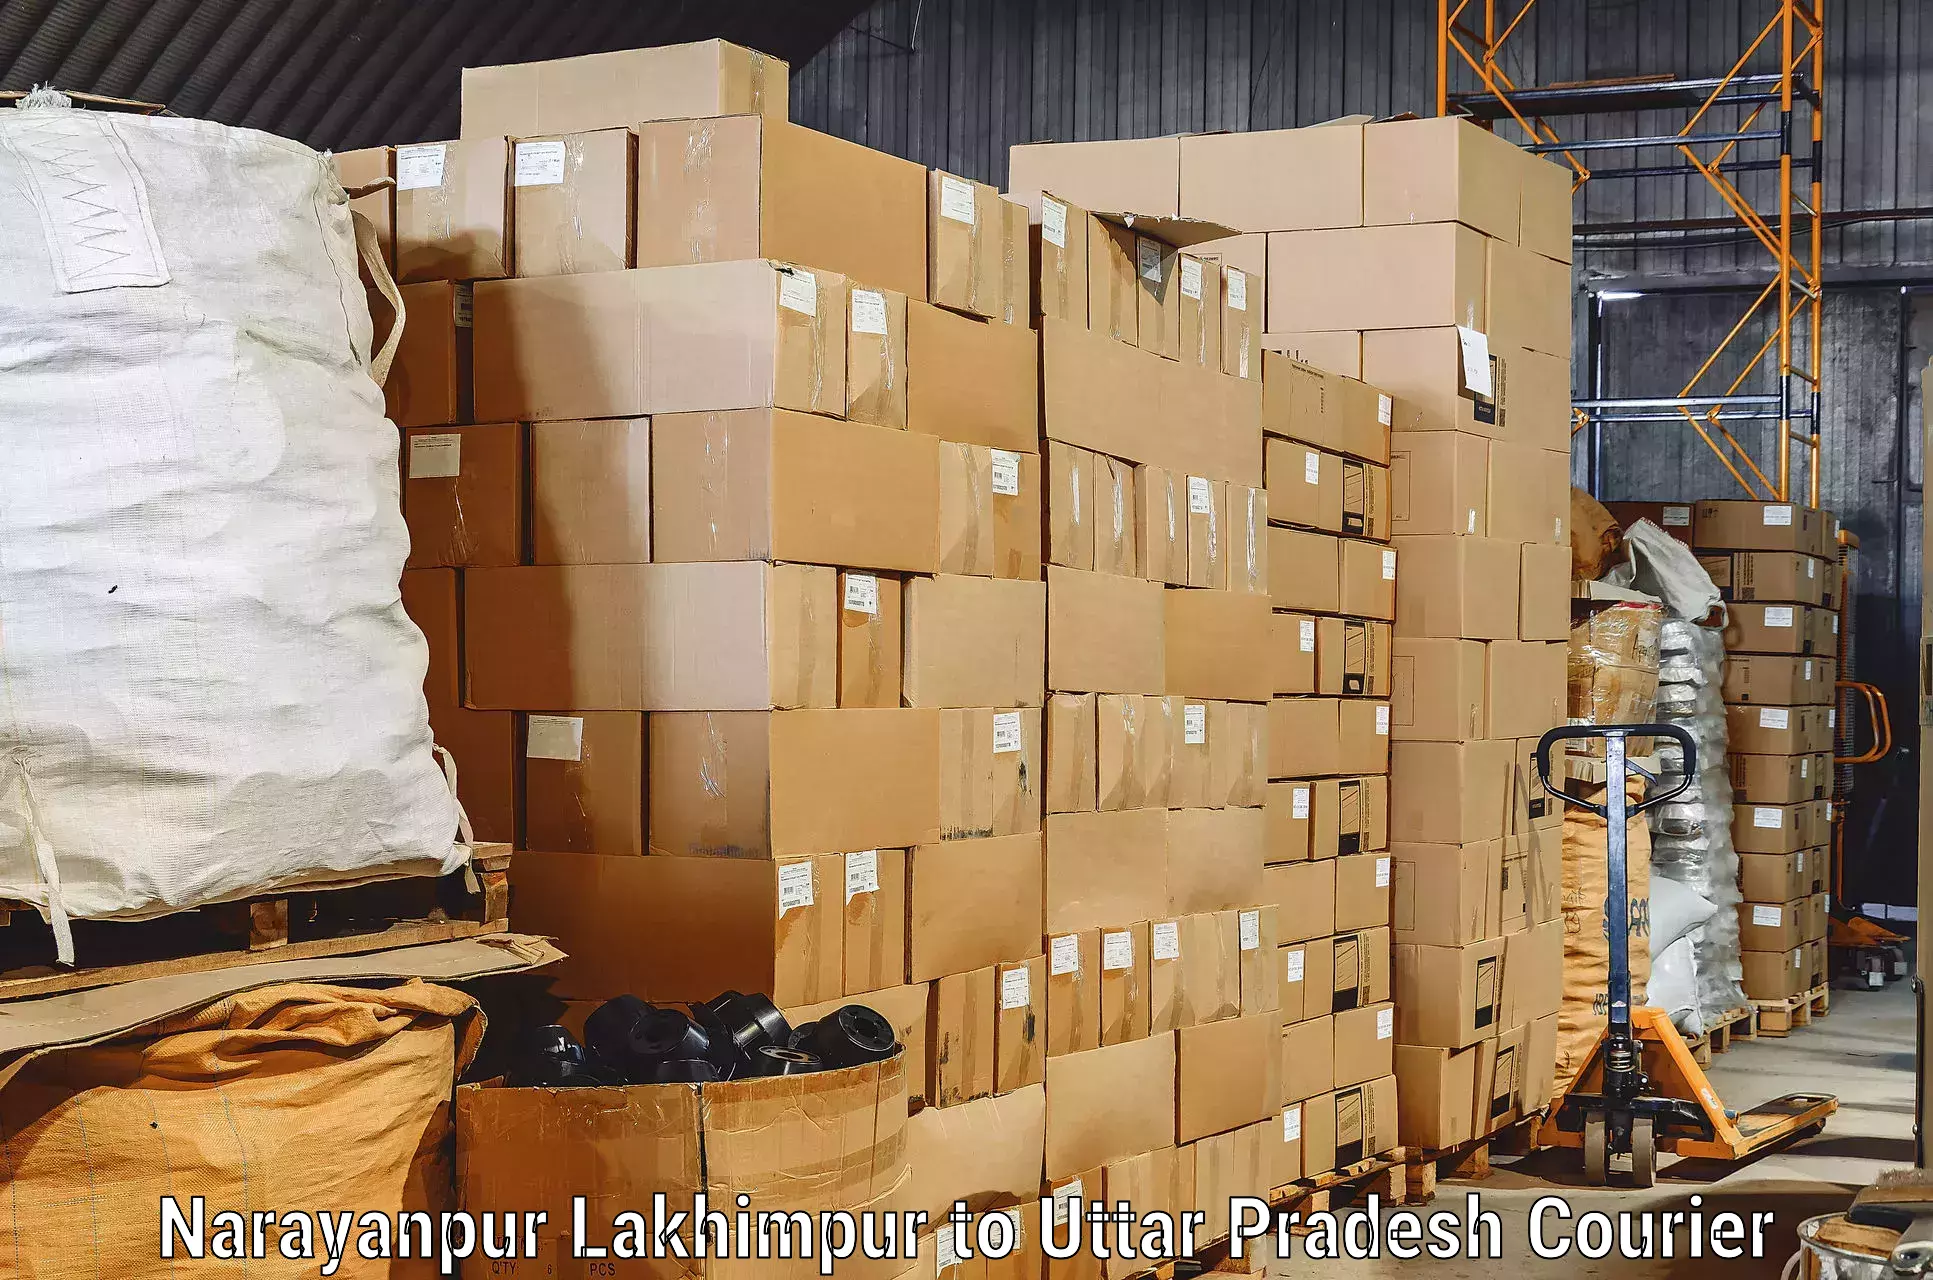 Dependable furniture transport Narayanpur Lakhimpur to Dhanghata